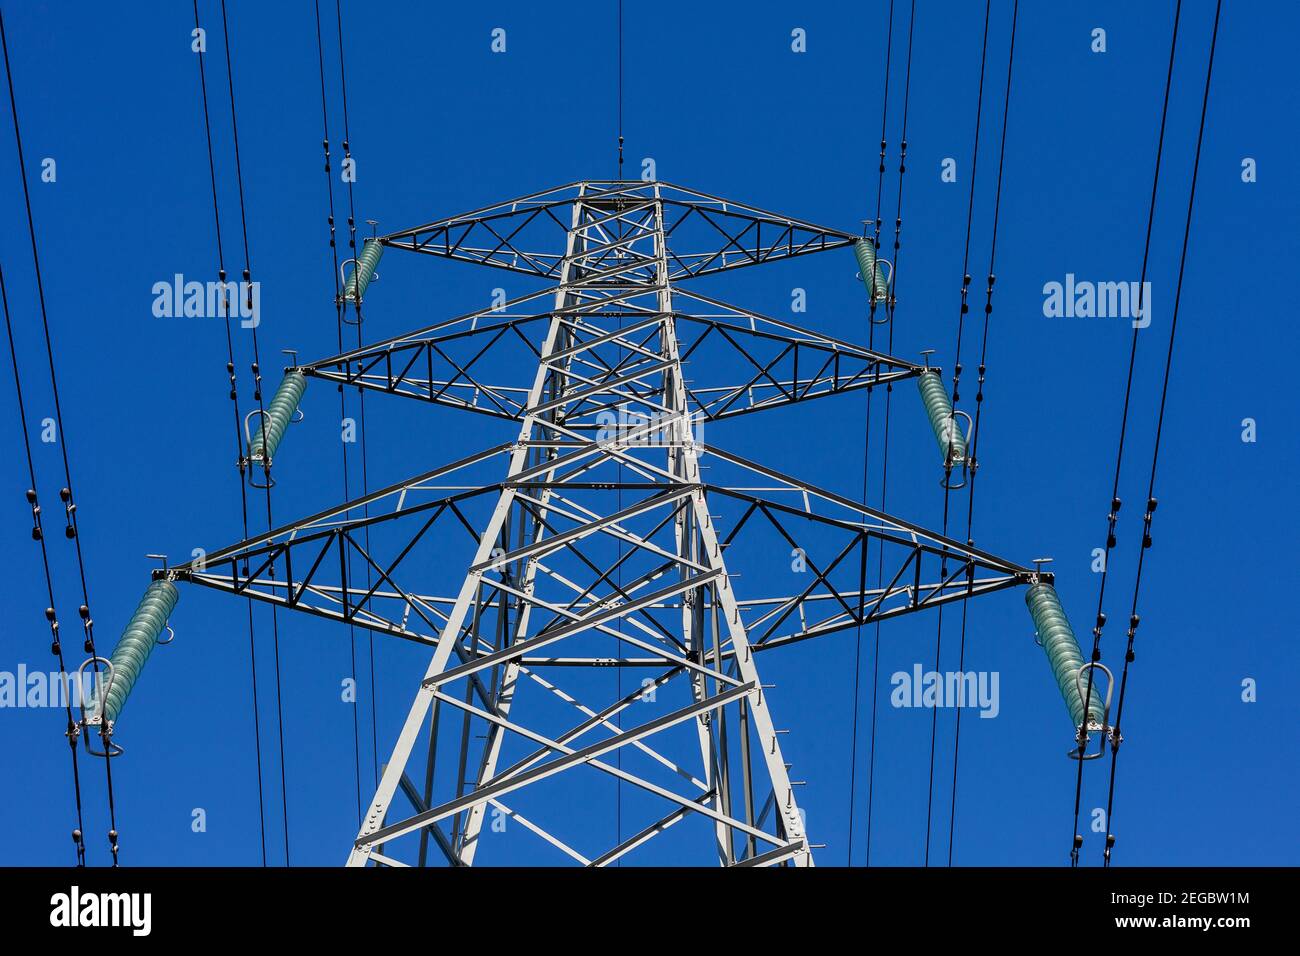 Vista verso l'alto di un traliccio elettrico, cavi di alimentazione e isolatori sospesi contro un cielo blu chiaro Foto Stock